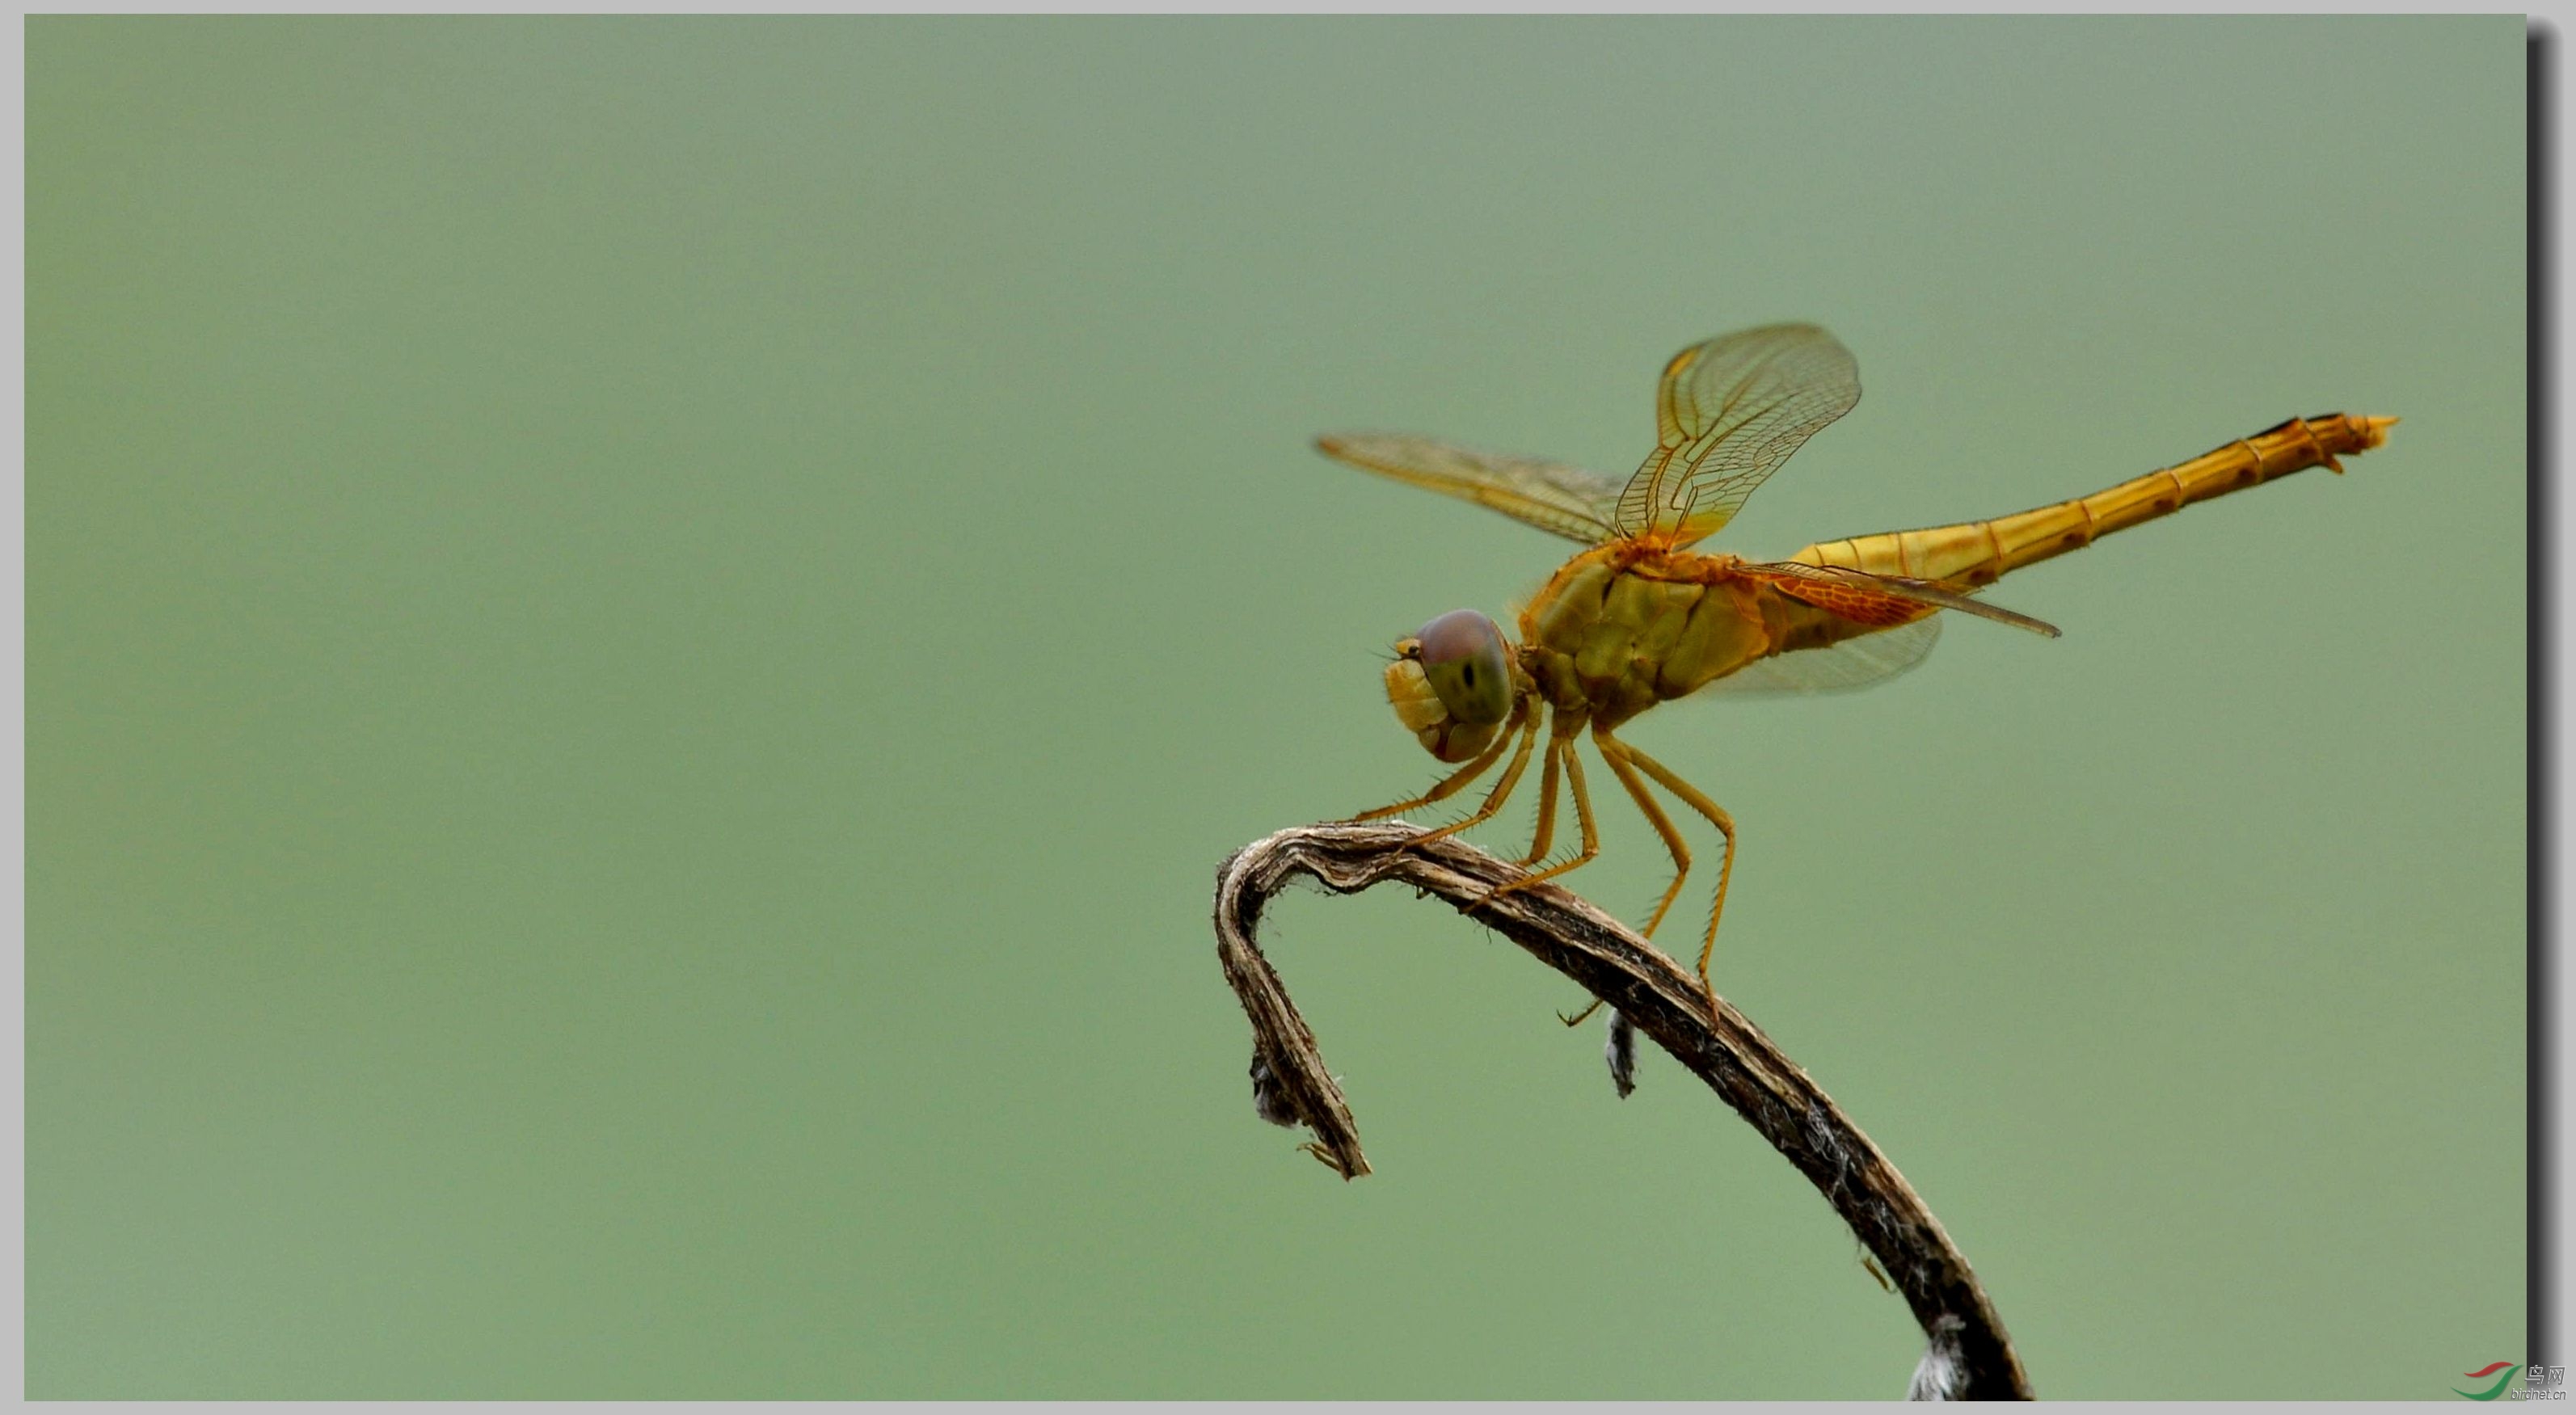 有意思的几张蜻蜓片 - 昆虫视界 Insects 鸟网